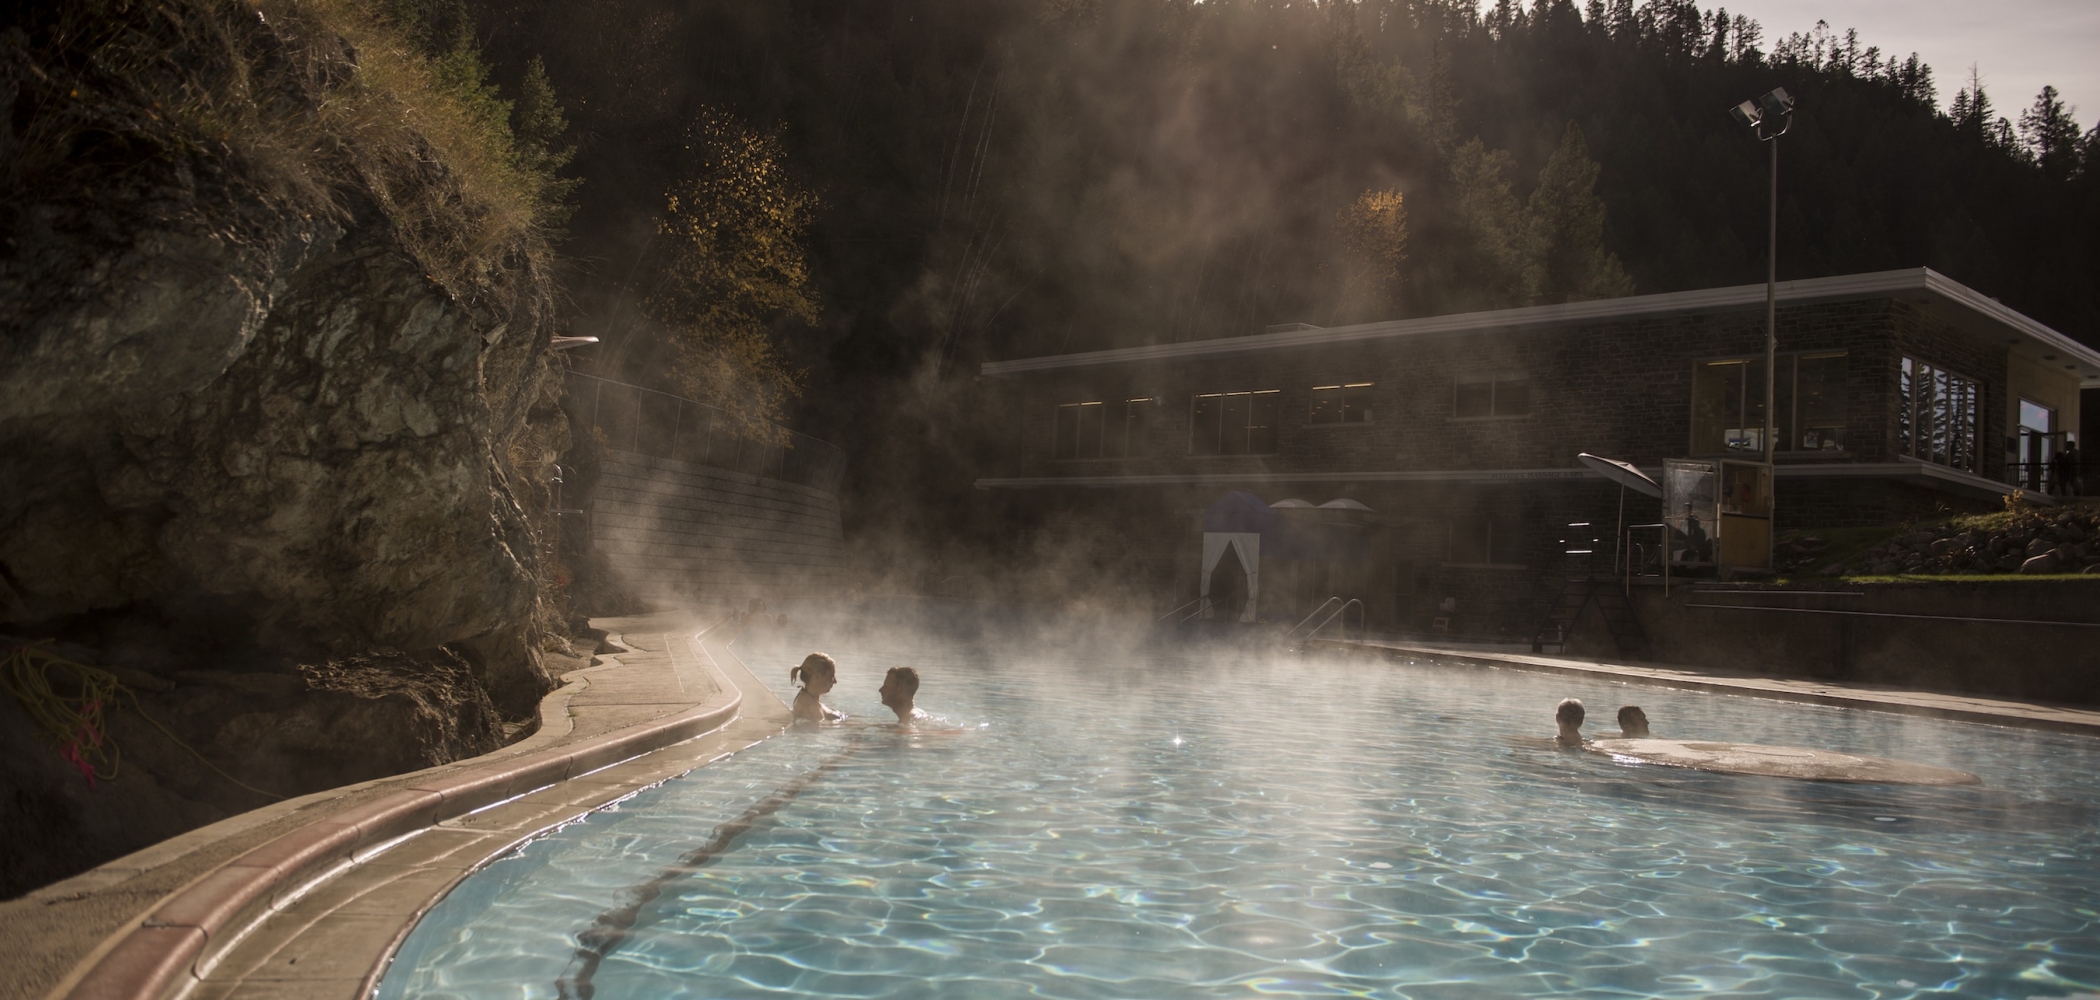 Radium Hot Springs pools in Kootenay National Park